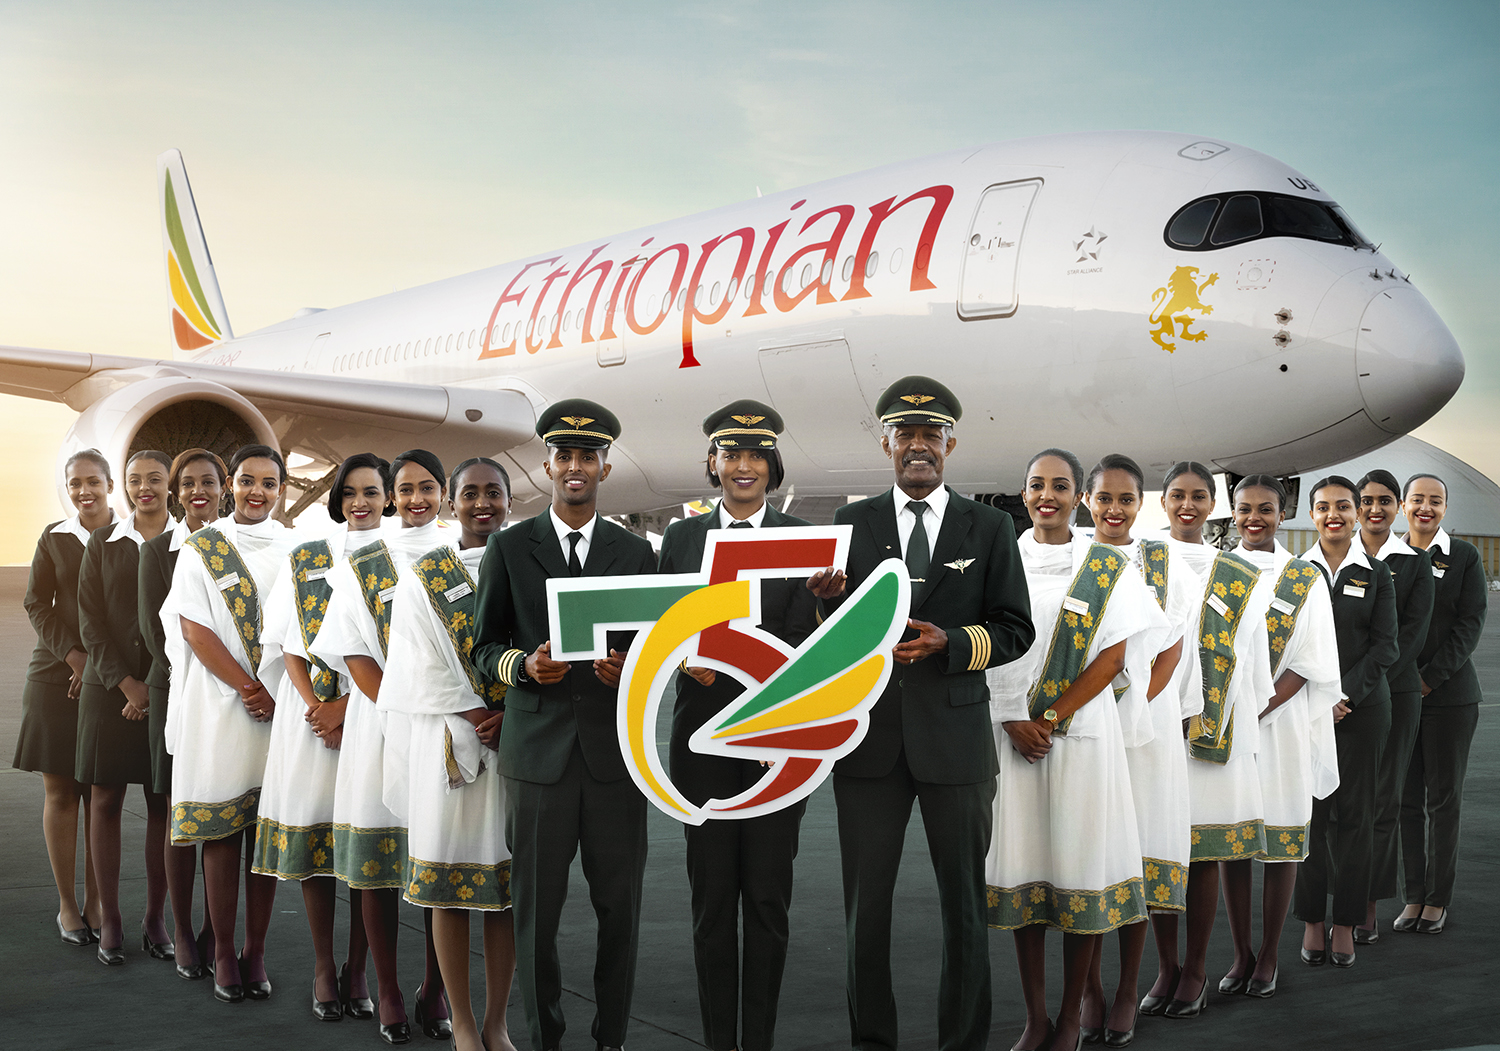 Ethiopian festeggia il 75° anniversario